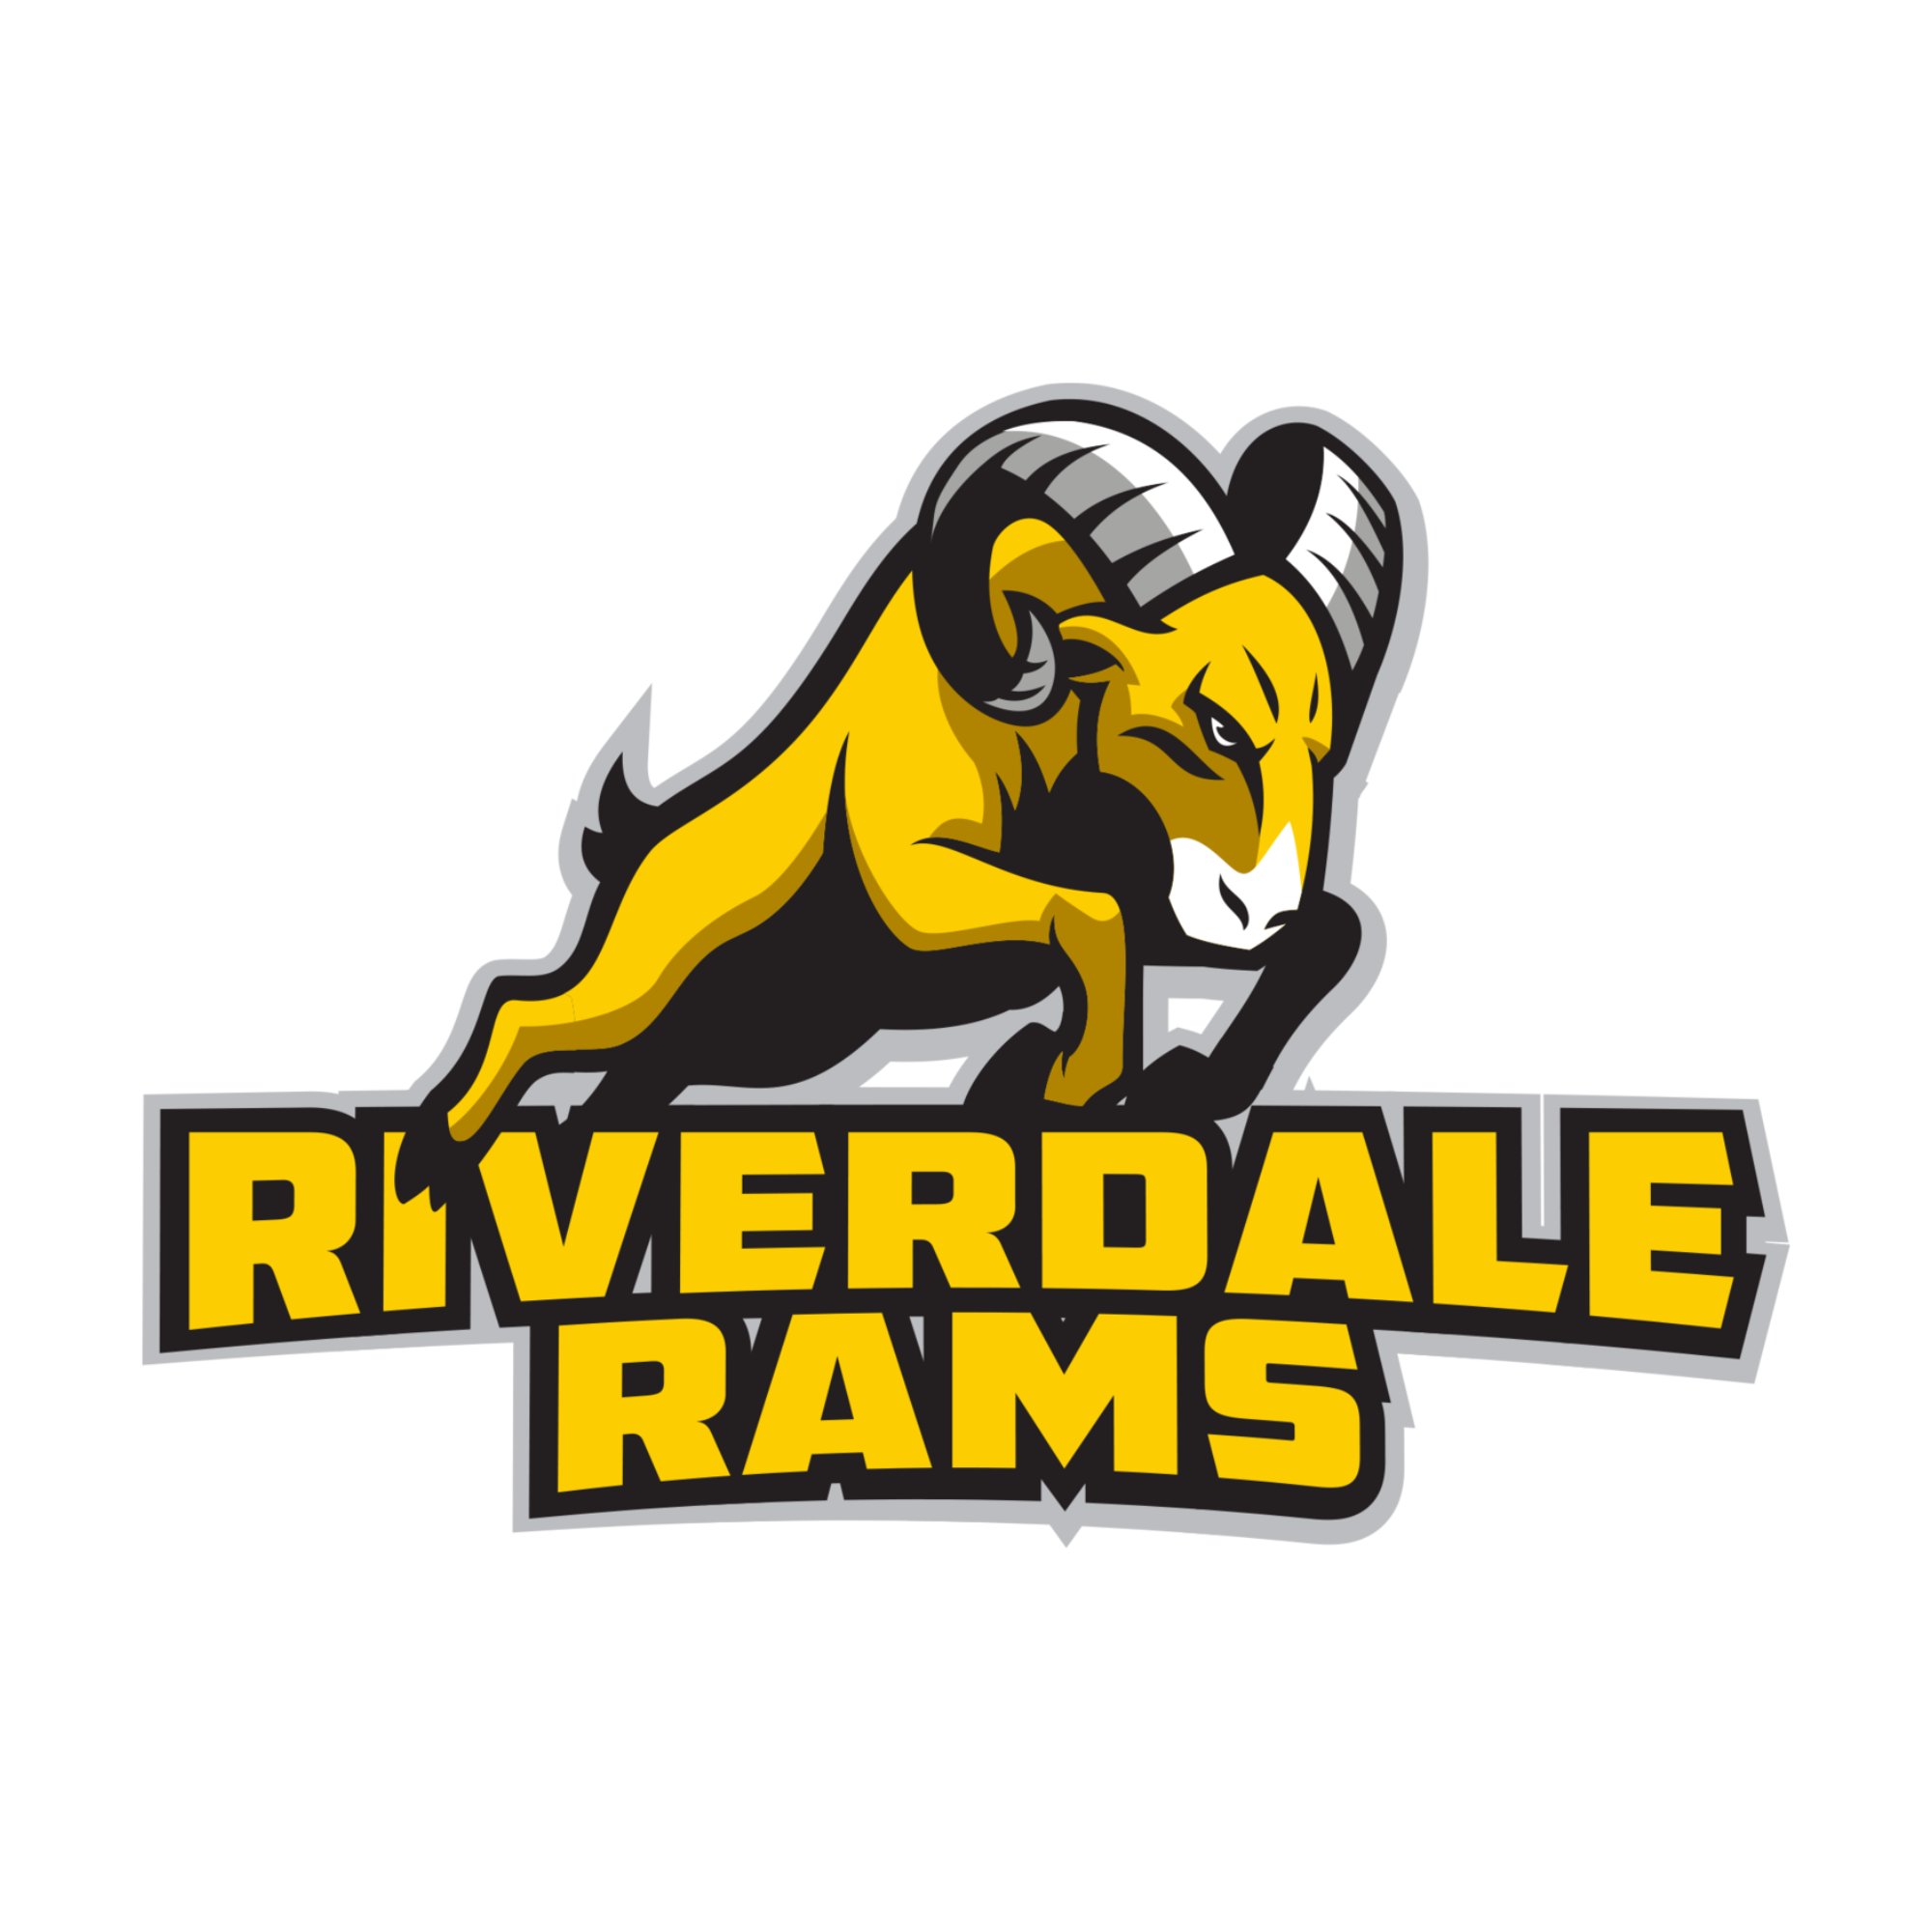 Riverdale Rams